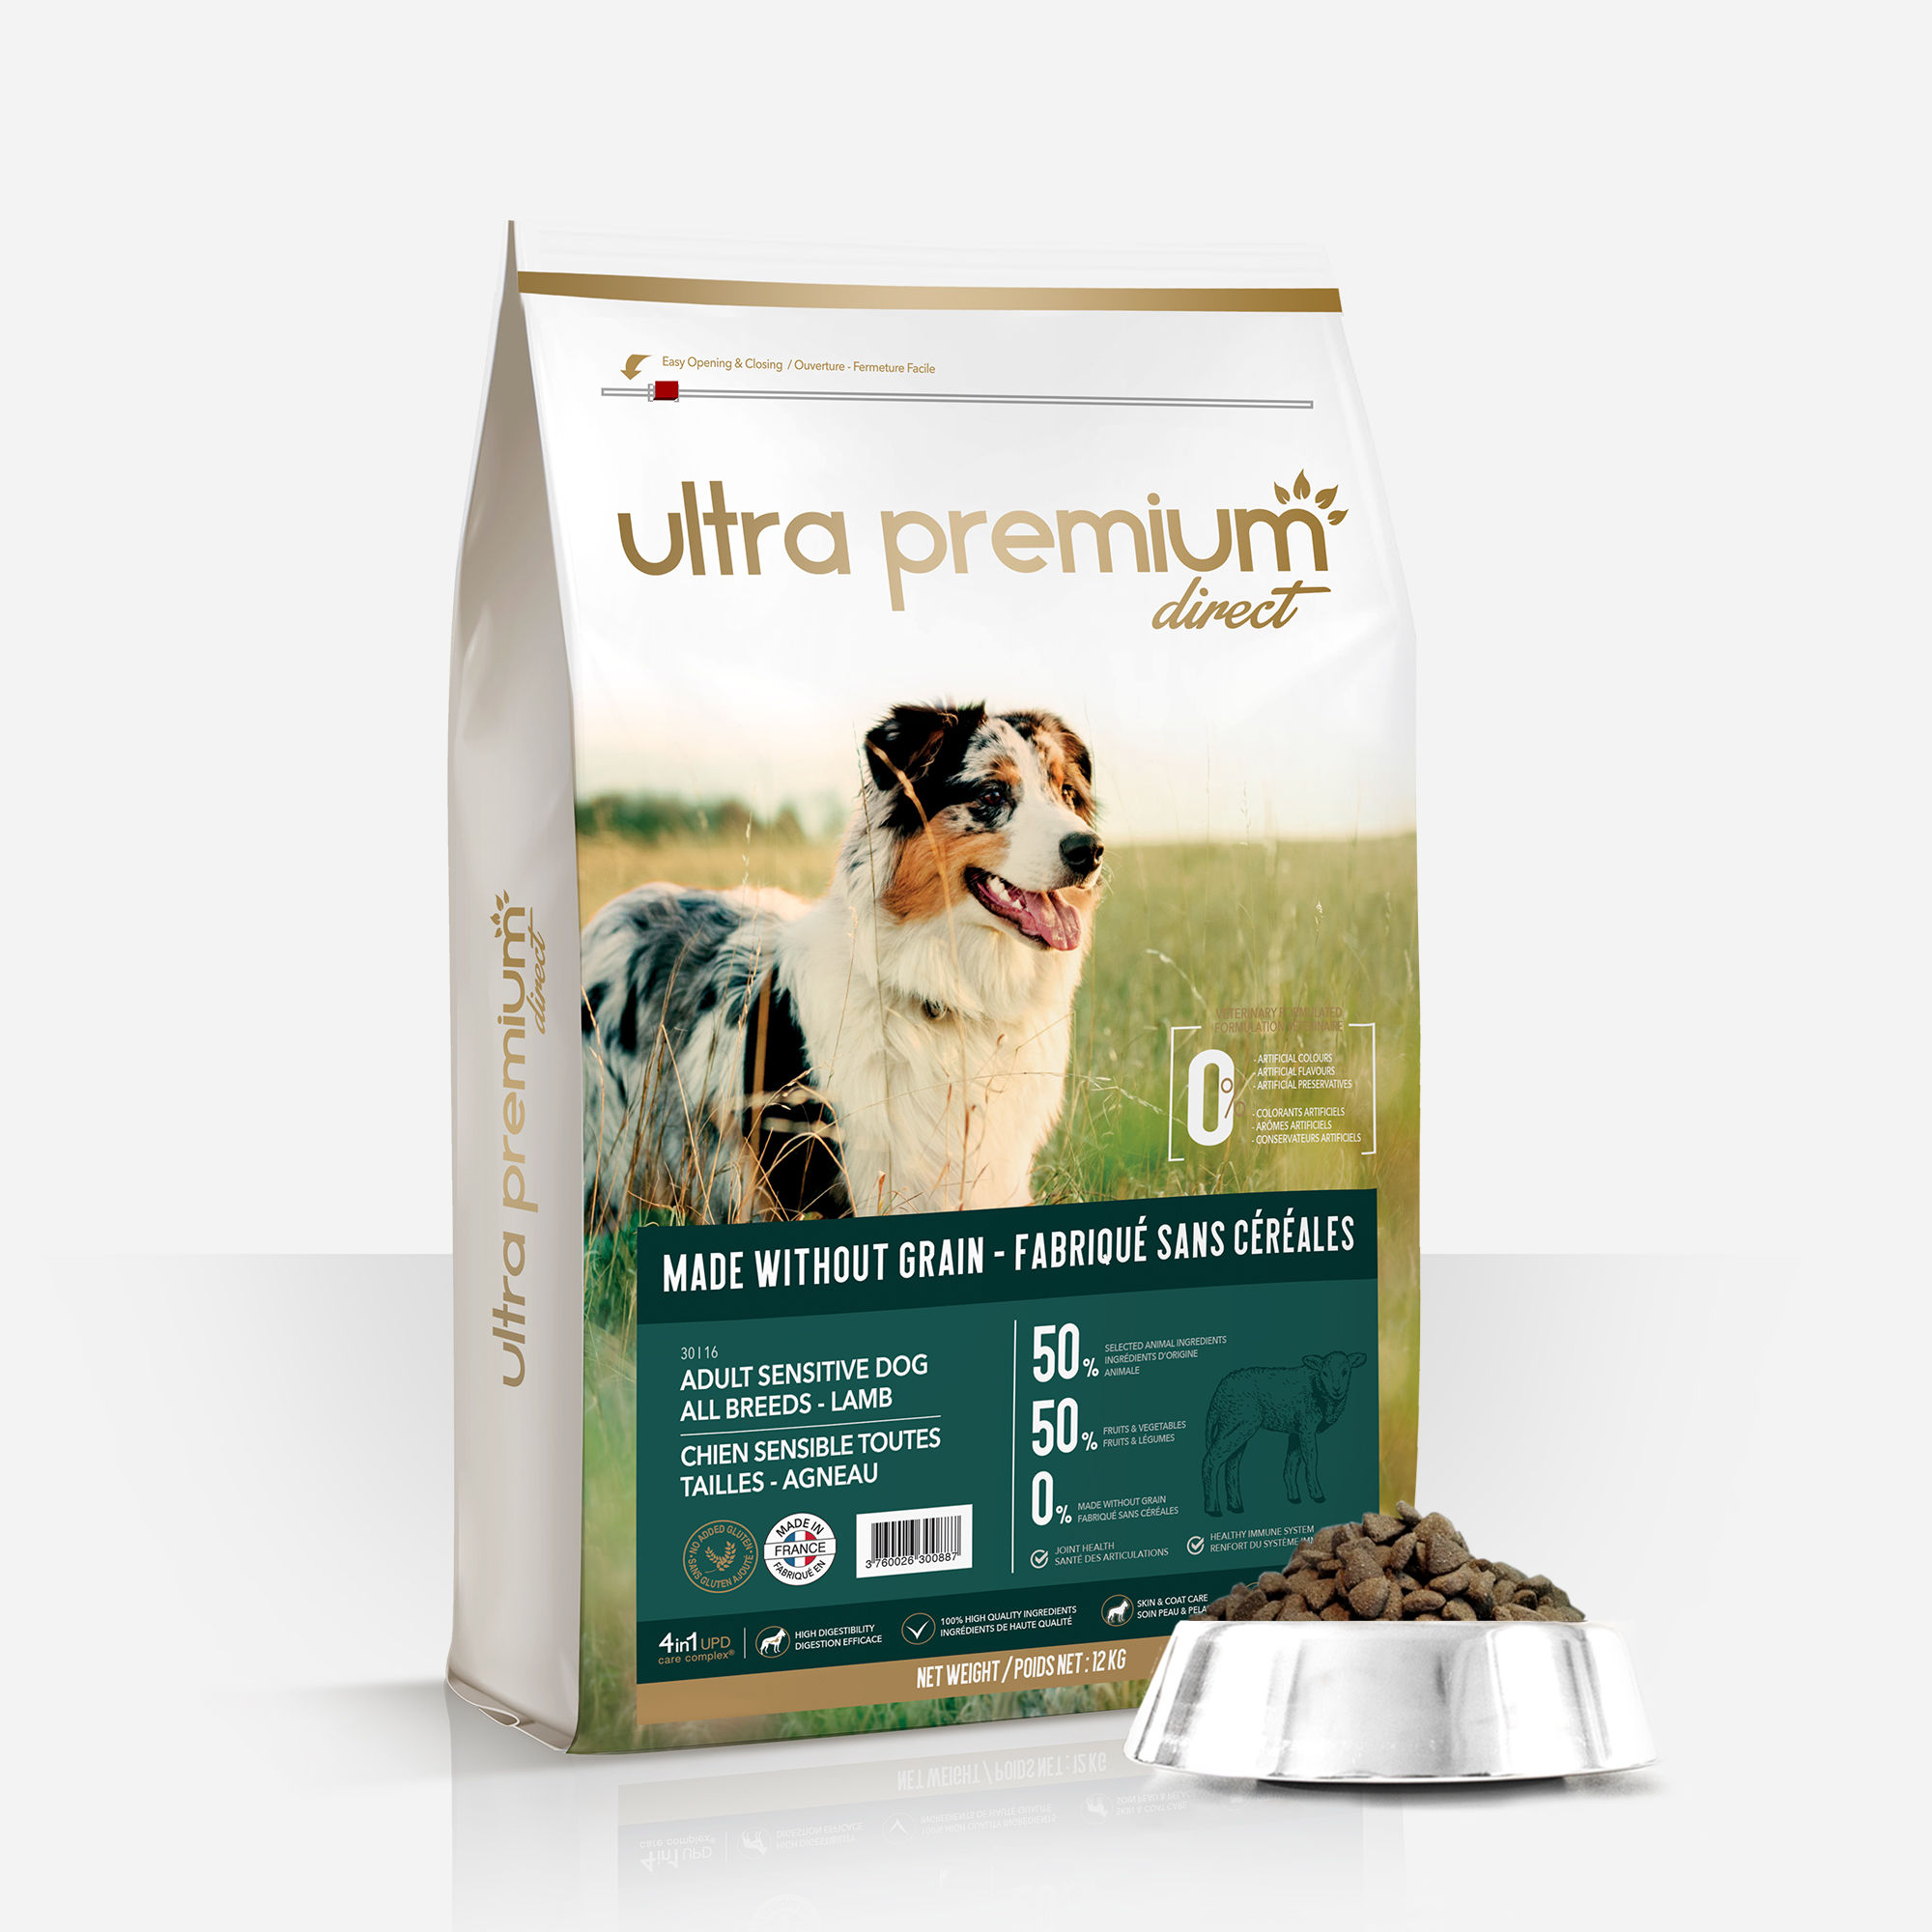 Kit d'empreinte pour chien et chat - Ultra Premium Direct